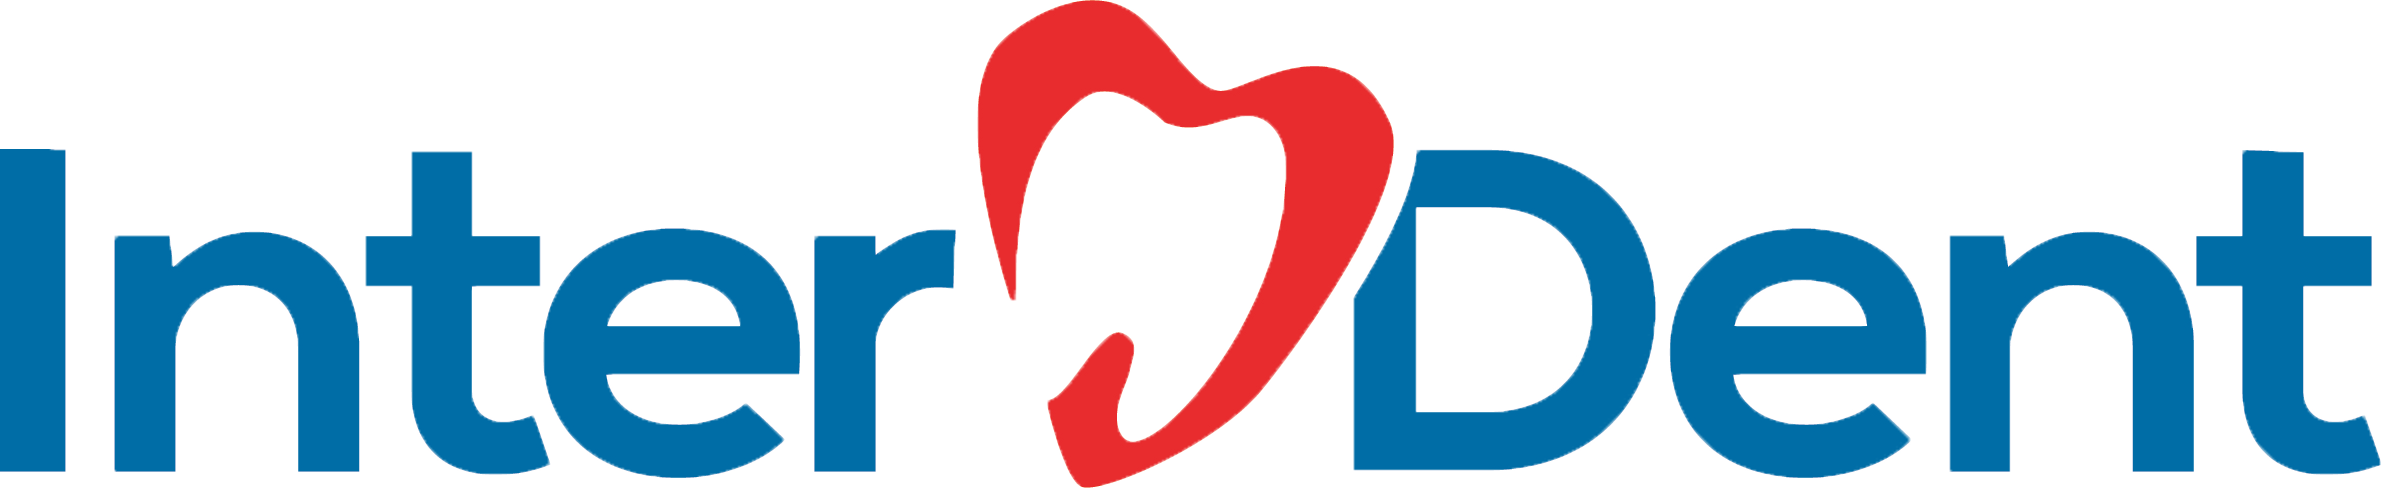 Interdent Logo